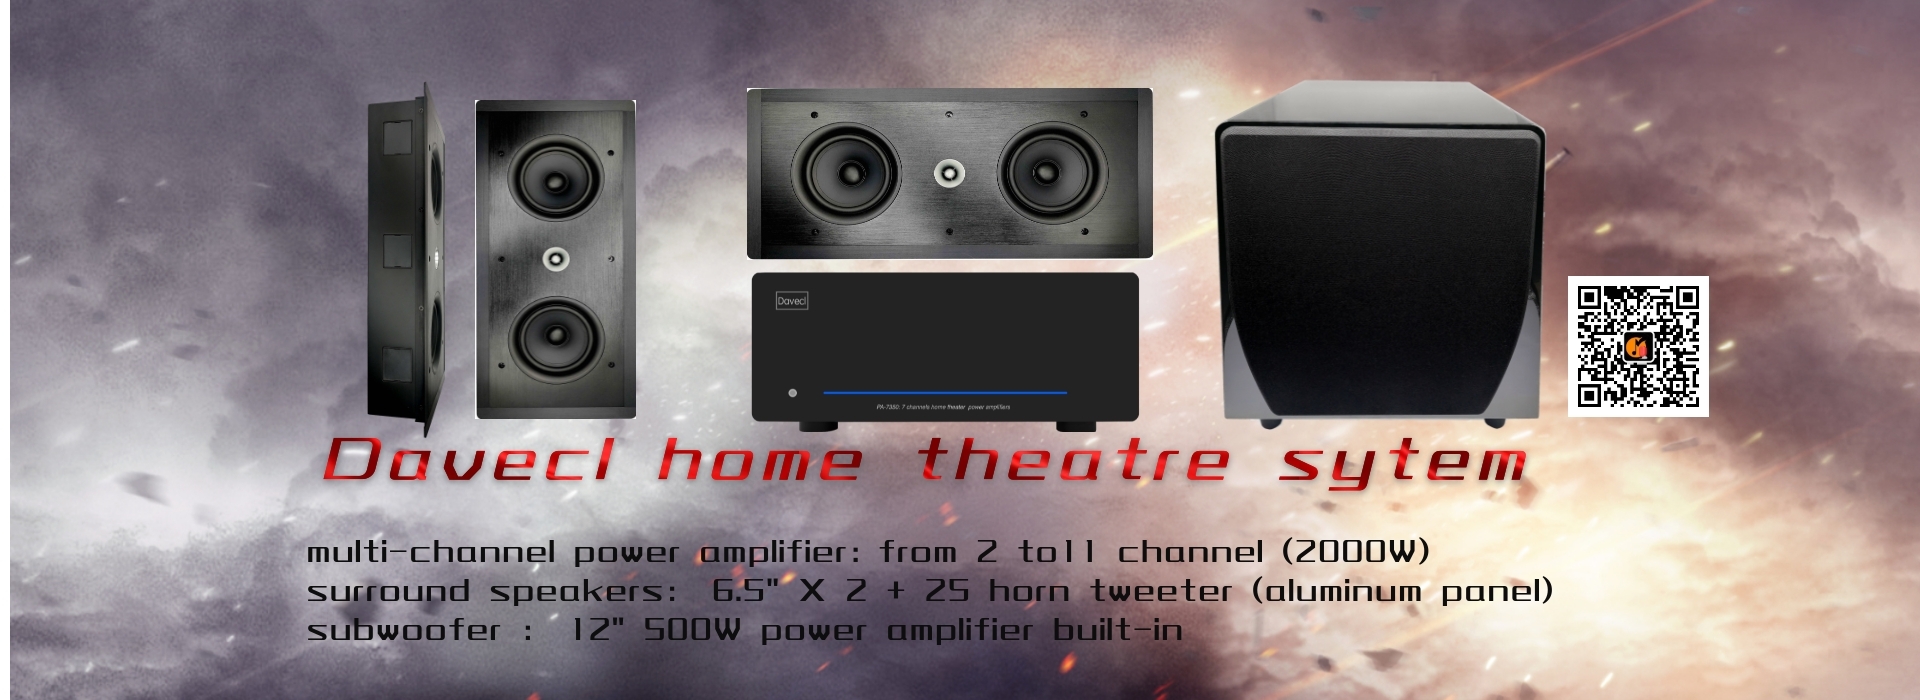 ev sinema sistemi-7 kanallı güç amplifikatörü-7 surround hoparlör-12 inç suboofer-ev sineması hoparlör sistemi